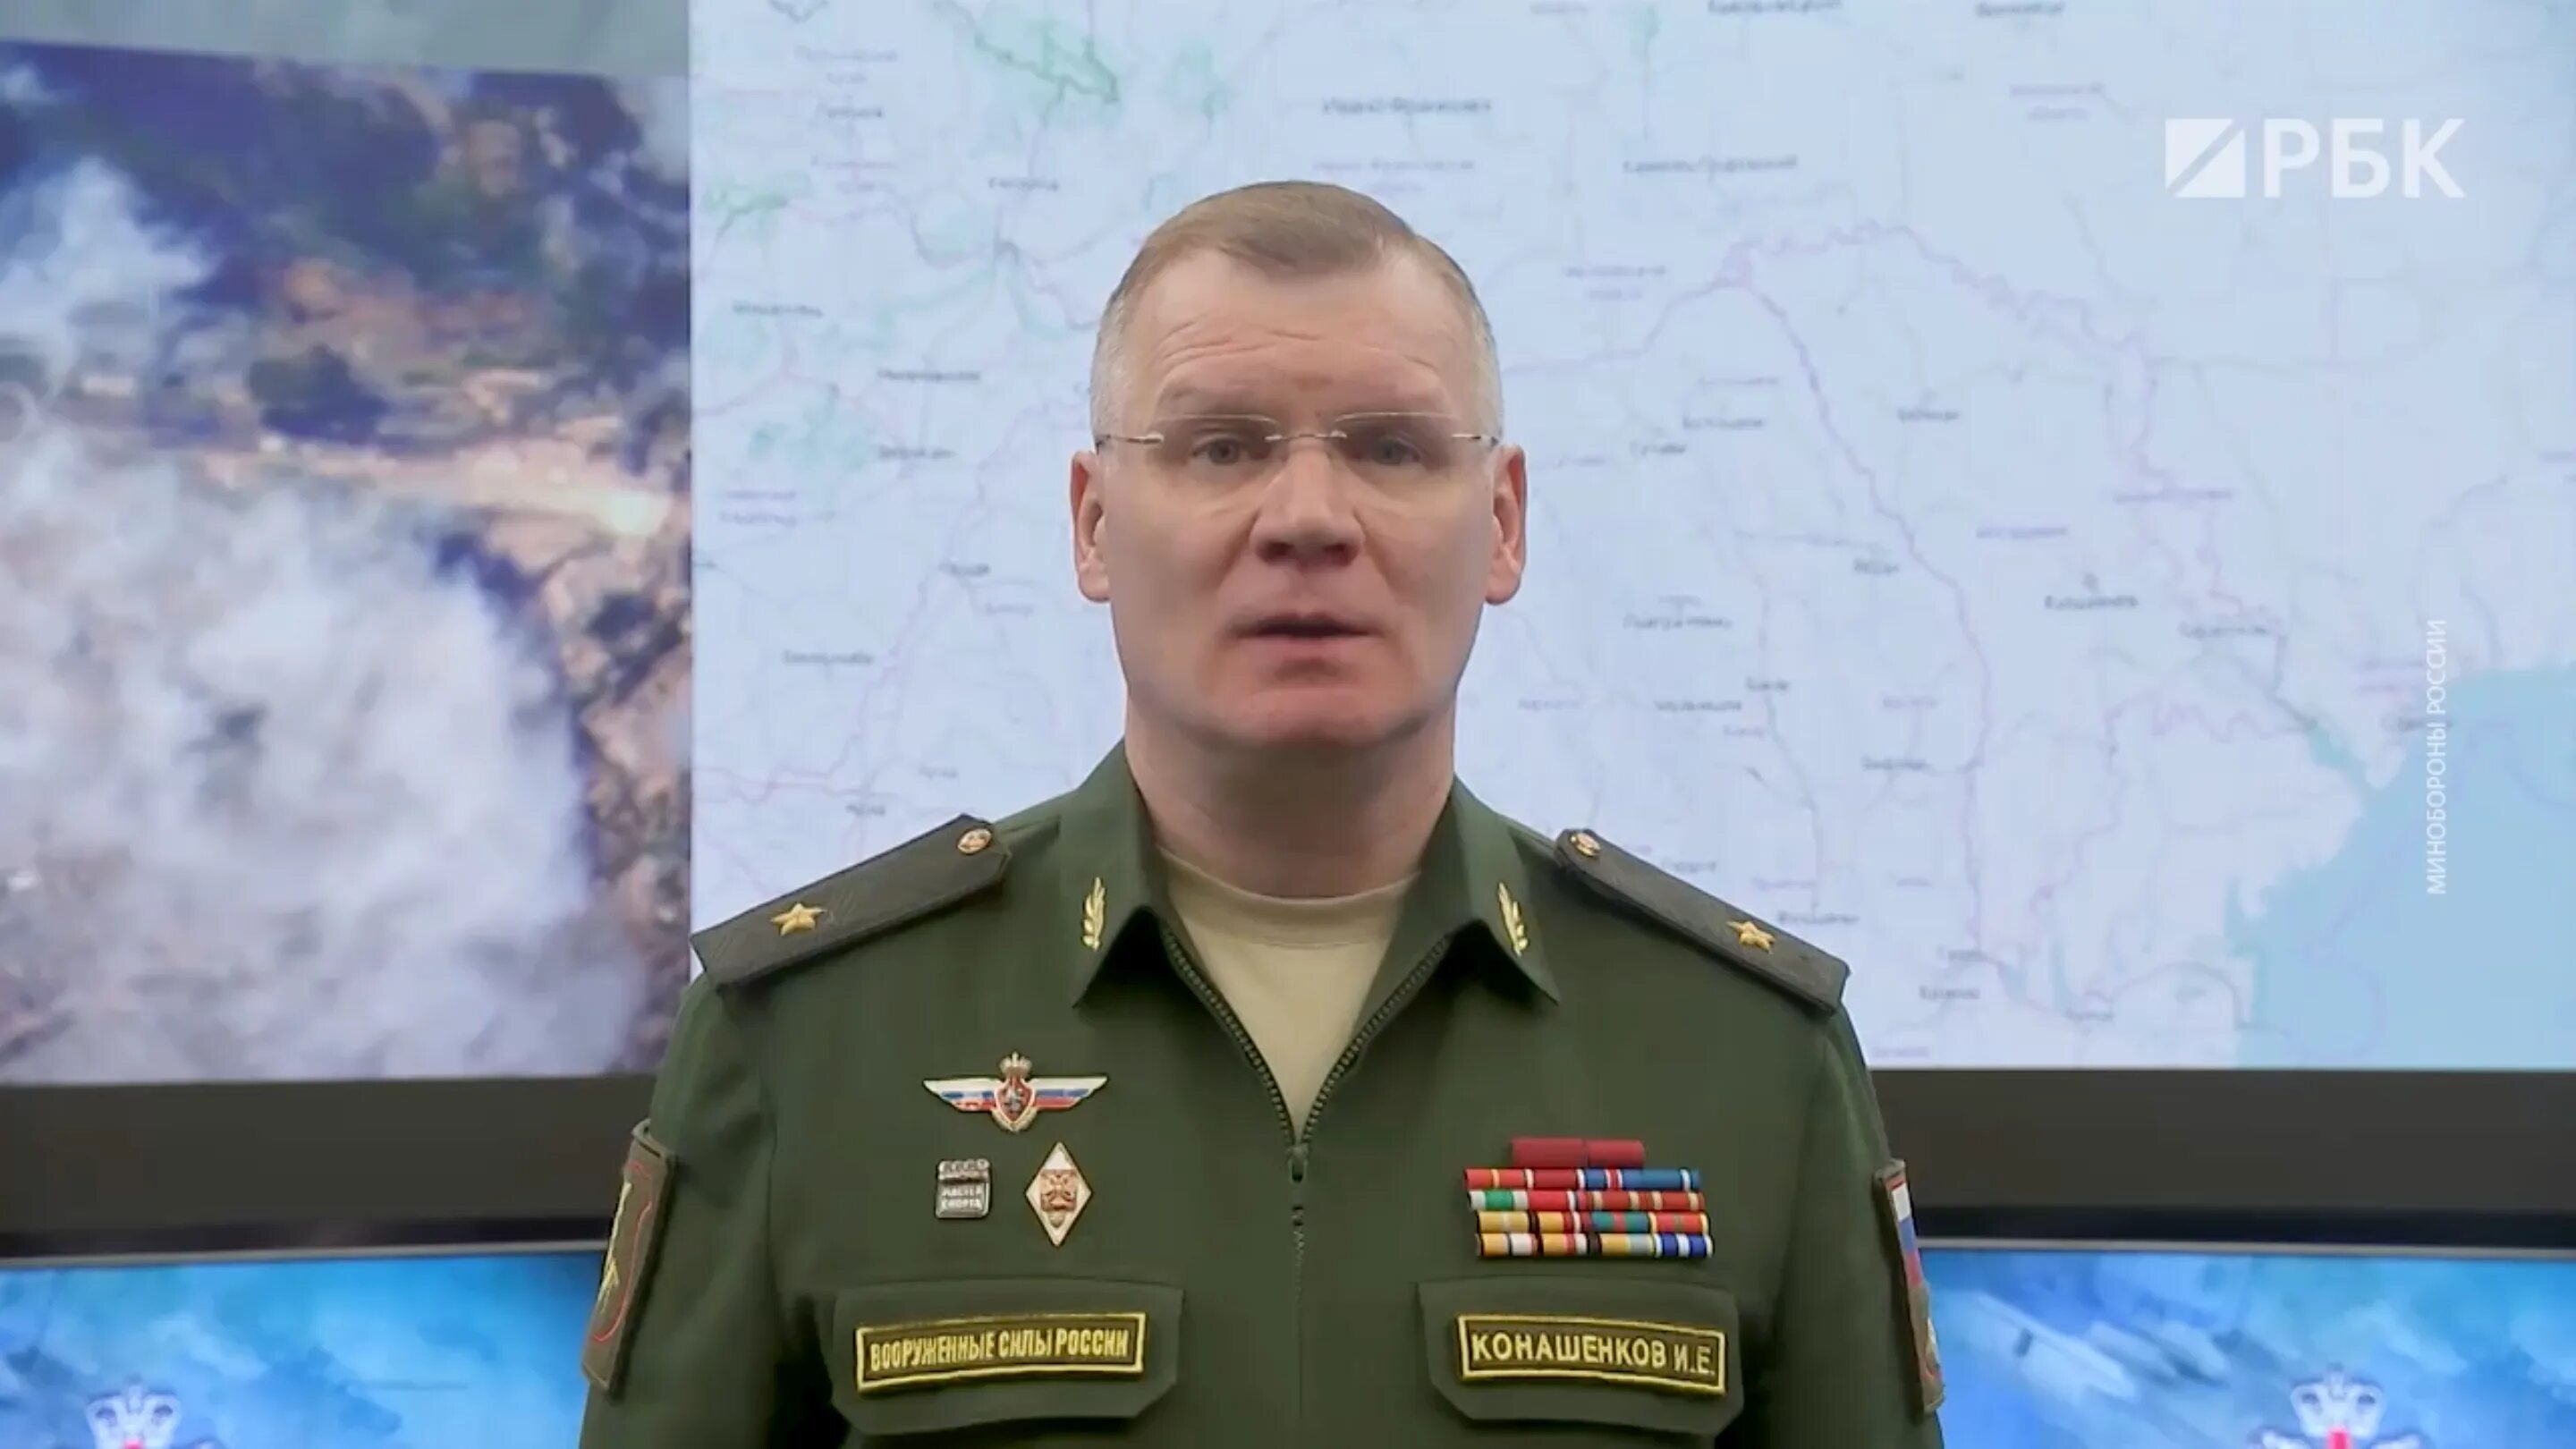 Конашенков генерал лейтенант.